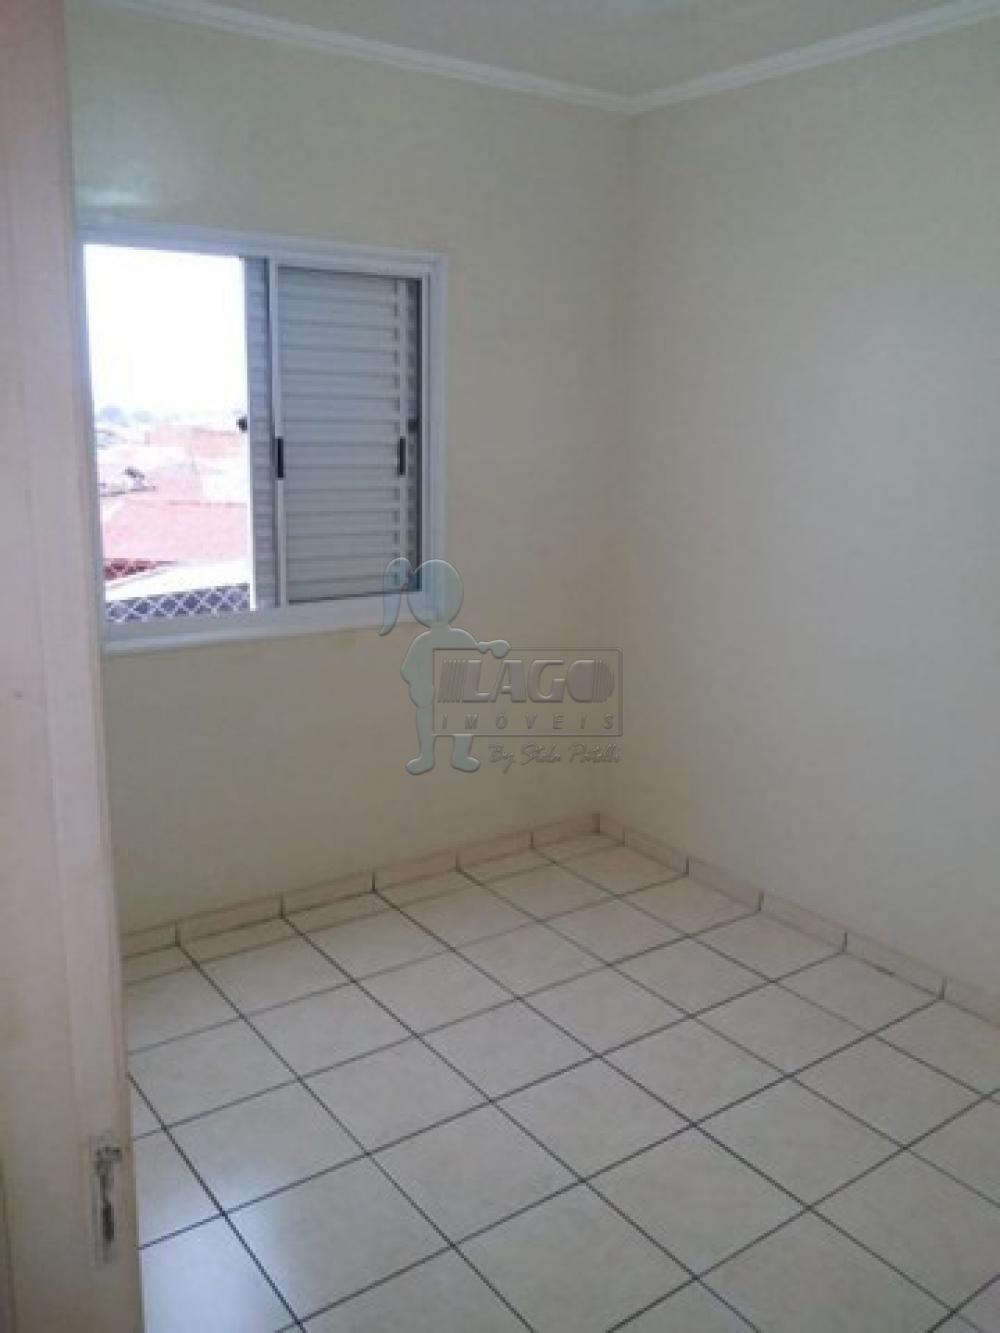 Comprar Apartamentos / Padrão em Sertãozinho R$ 135.000,00 - Foto 3